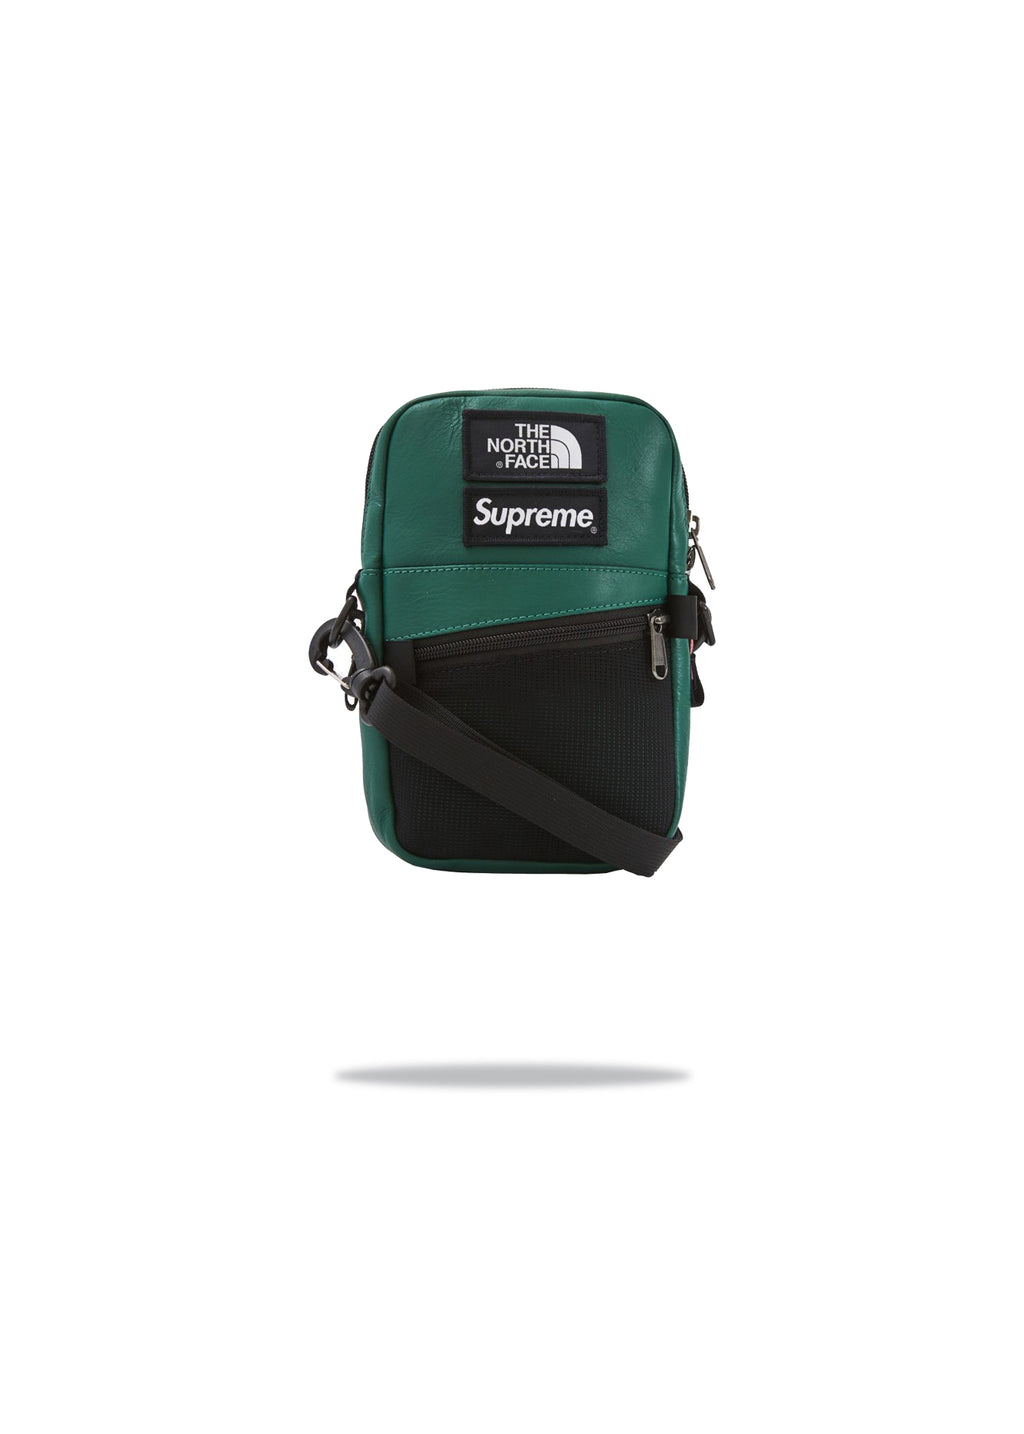 Supreme x TNF Shoulder Bag Leather Green